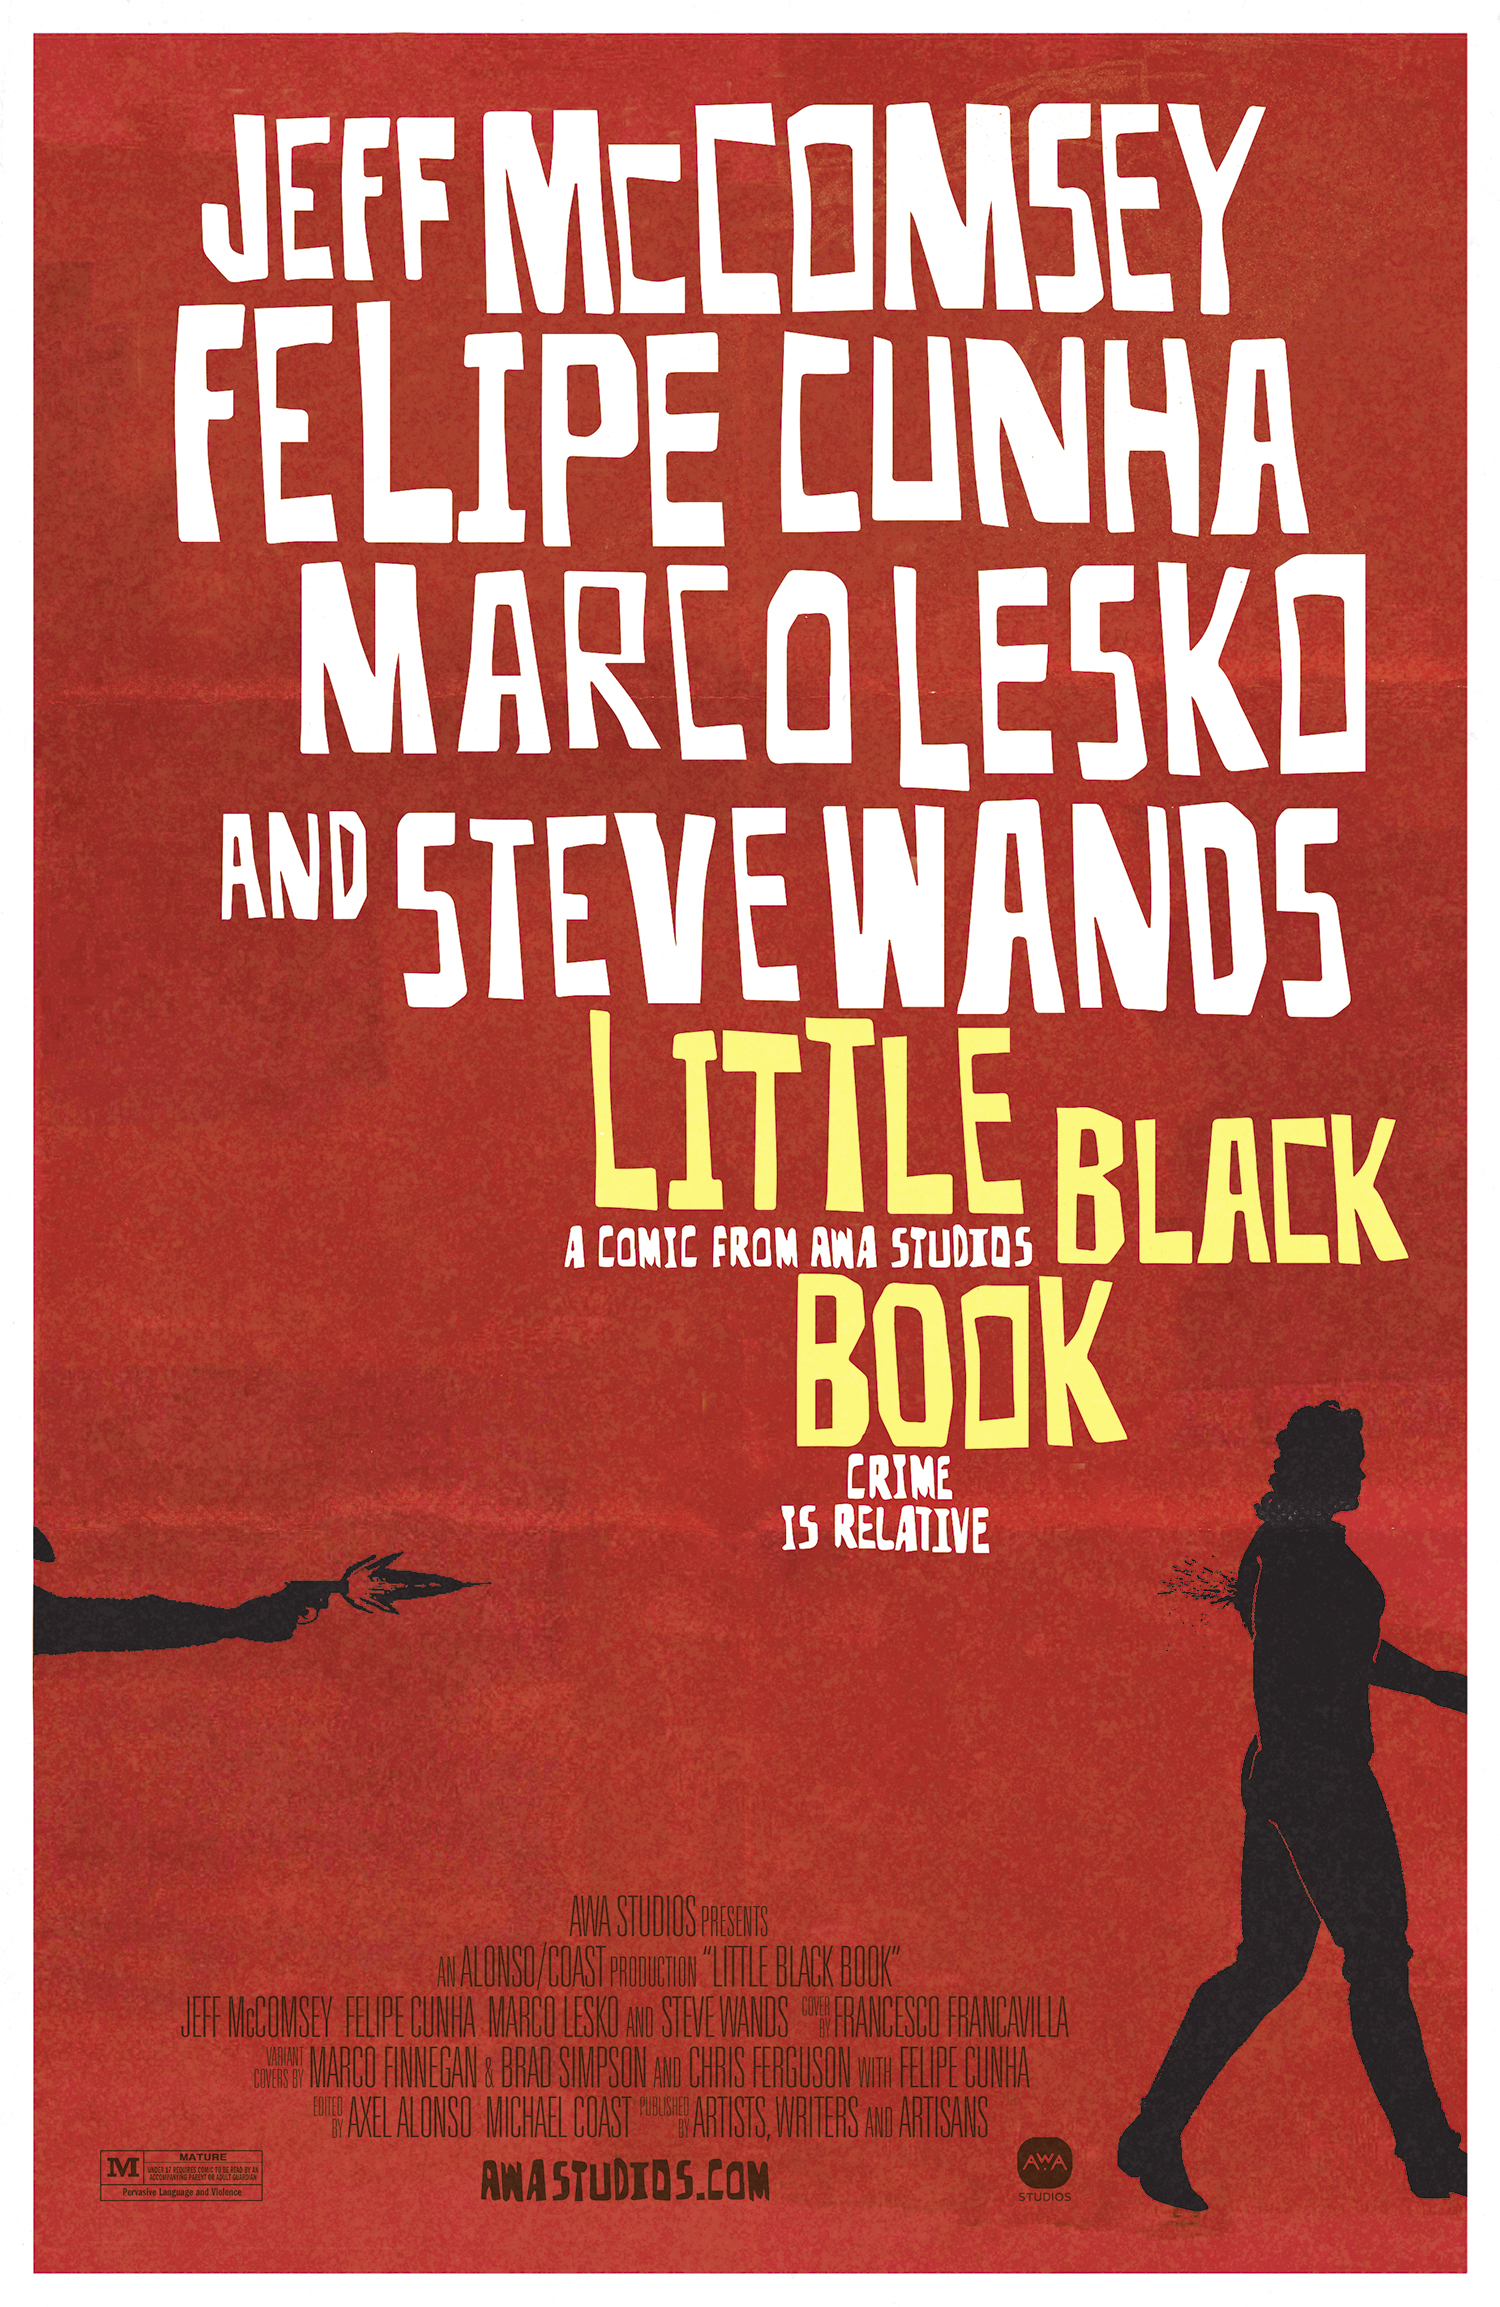 Little Black Book #3 Cover C Chris Ferguson & Felipe Cunha Movie Poster Homage Variant (Mature (Of 4)